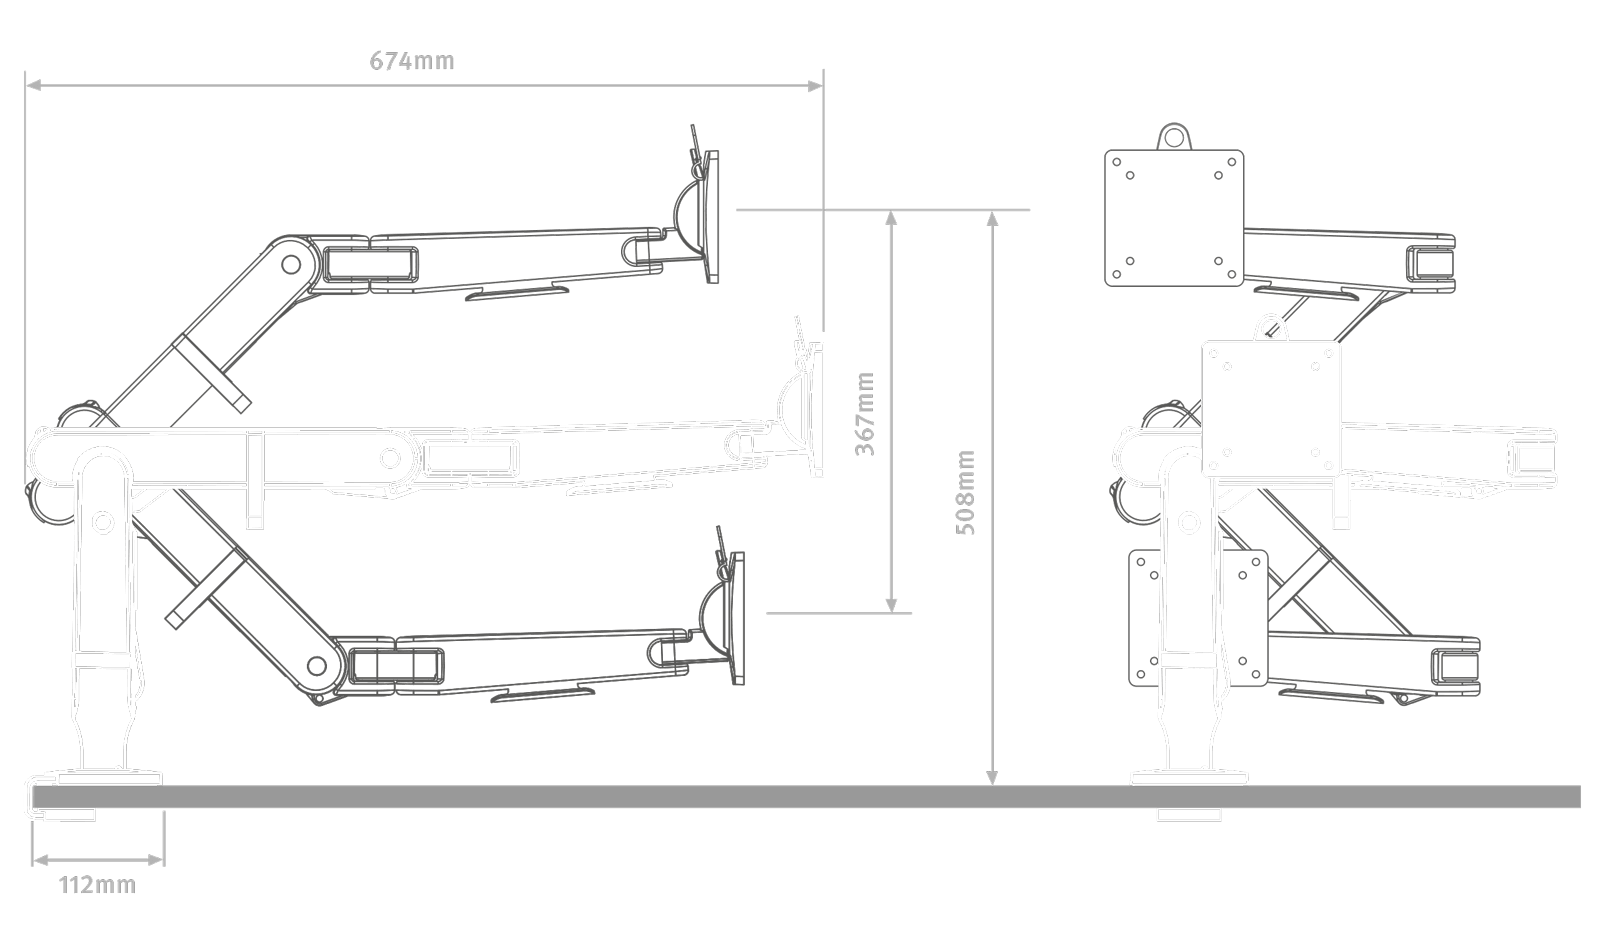 Zeichnung des Ollin Monitorarms in Weiß auf einem schwarzen Hintergrund, die die Höhenmaße darstellt.